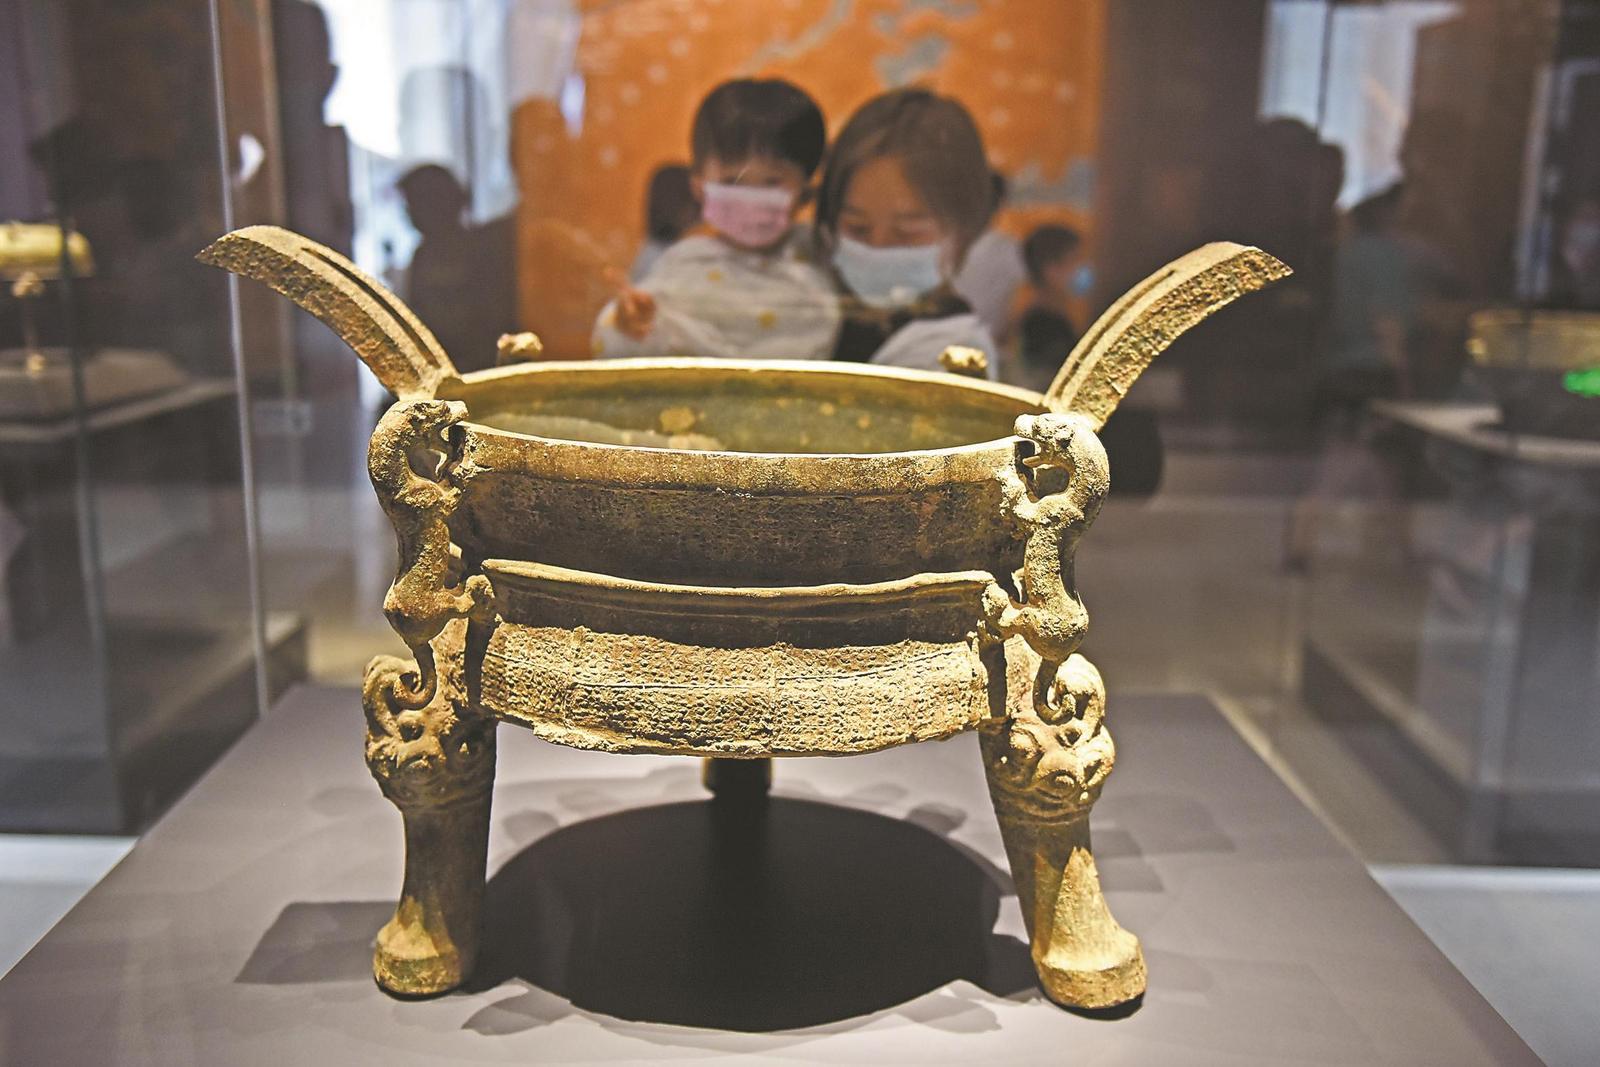 參觀者在壽縣安徽楚文化博物館內欣賞青銅器鑄客升鼎。 特約攝影 陳彬 攝